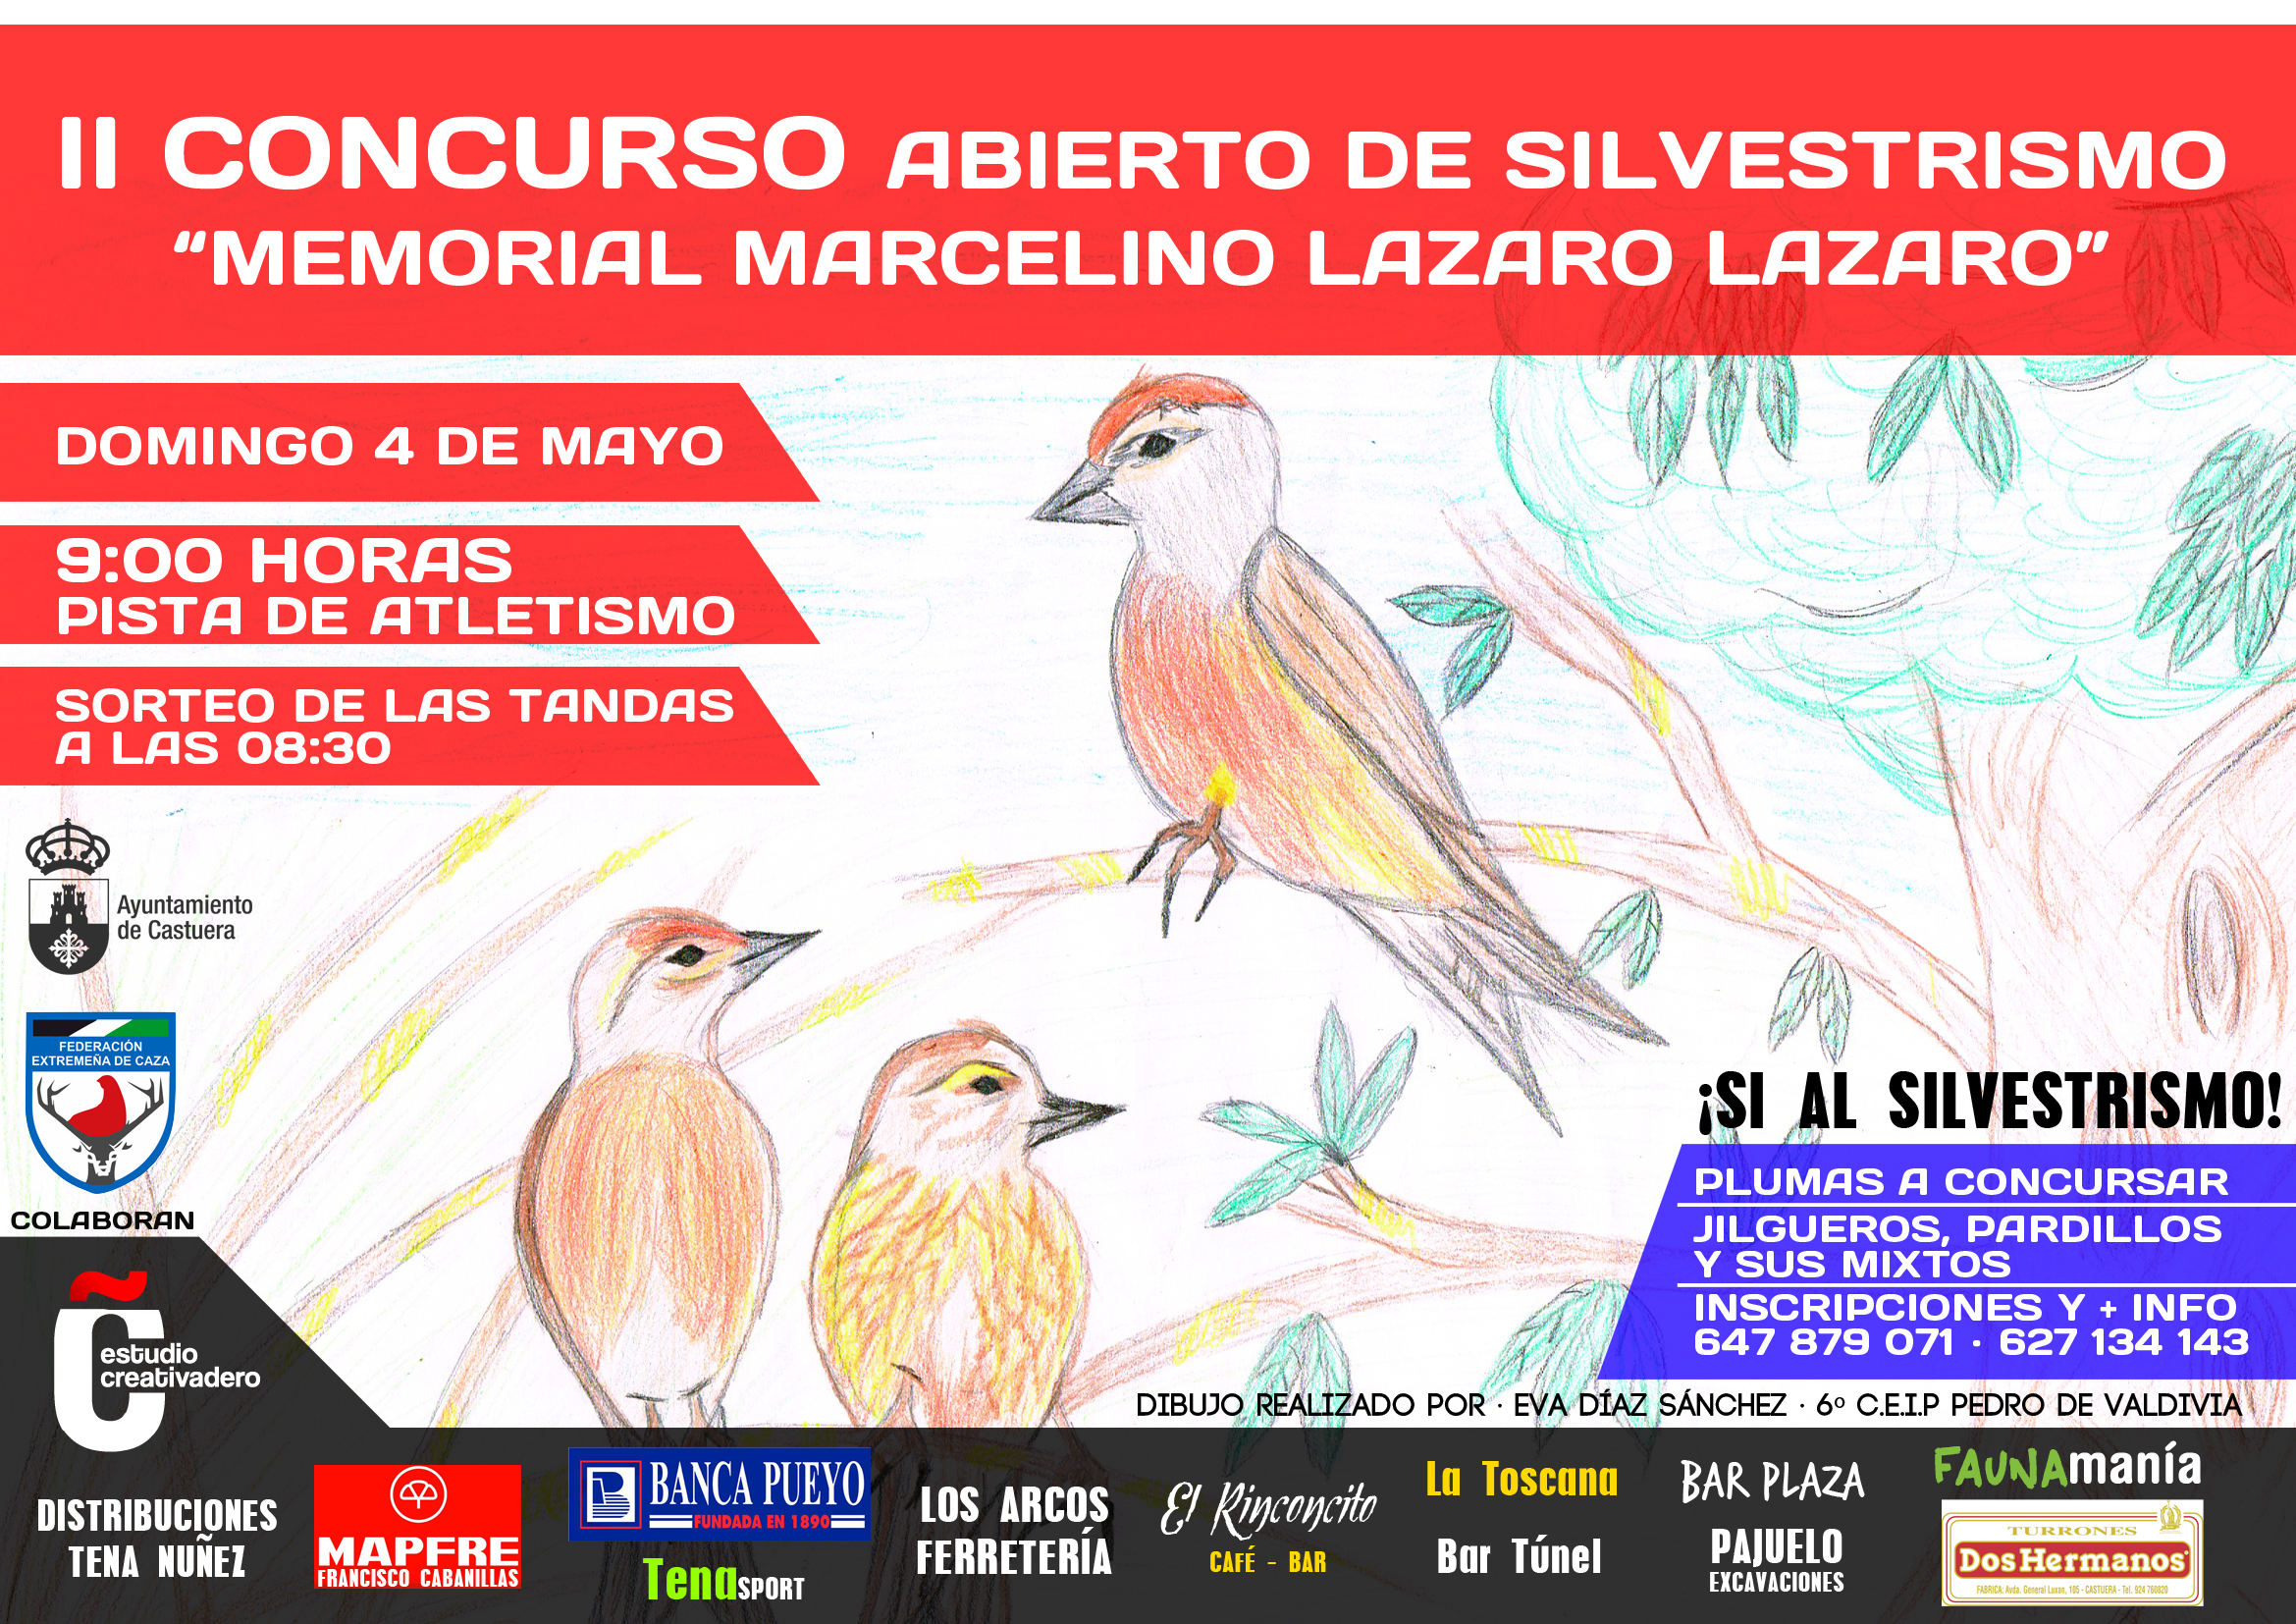 La Asociación Silvestrísta celebra el II Concurso Abierto "Memorial Marcelino Lázaro Lázaro"